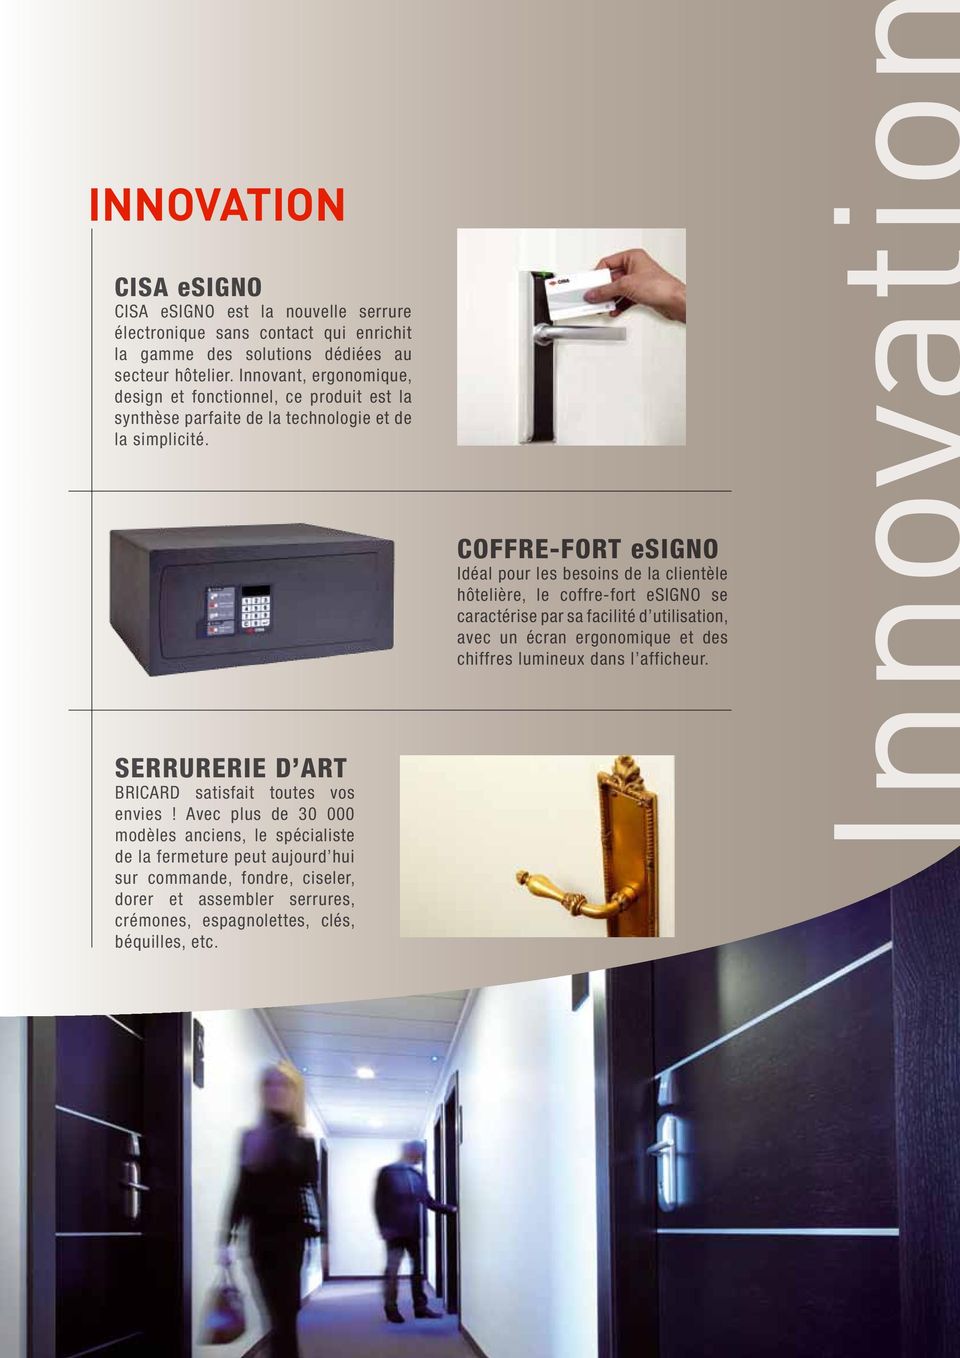 COFFRE-FORT esigno Idéal pour les besoins de la clientèle hôtelière, le coffre-fort esigno se caractérise par sa facilité d utilisation, avec un écran ergonomique et des chiffres